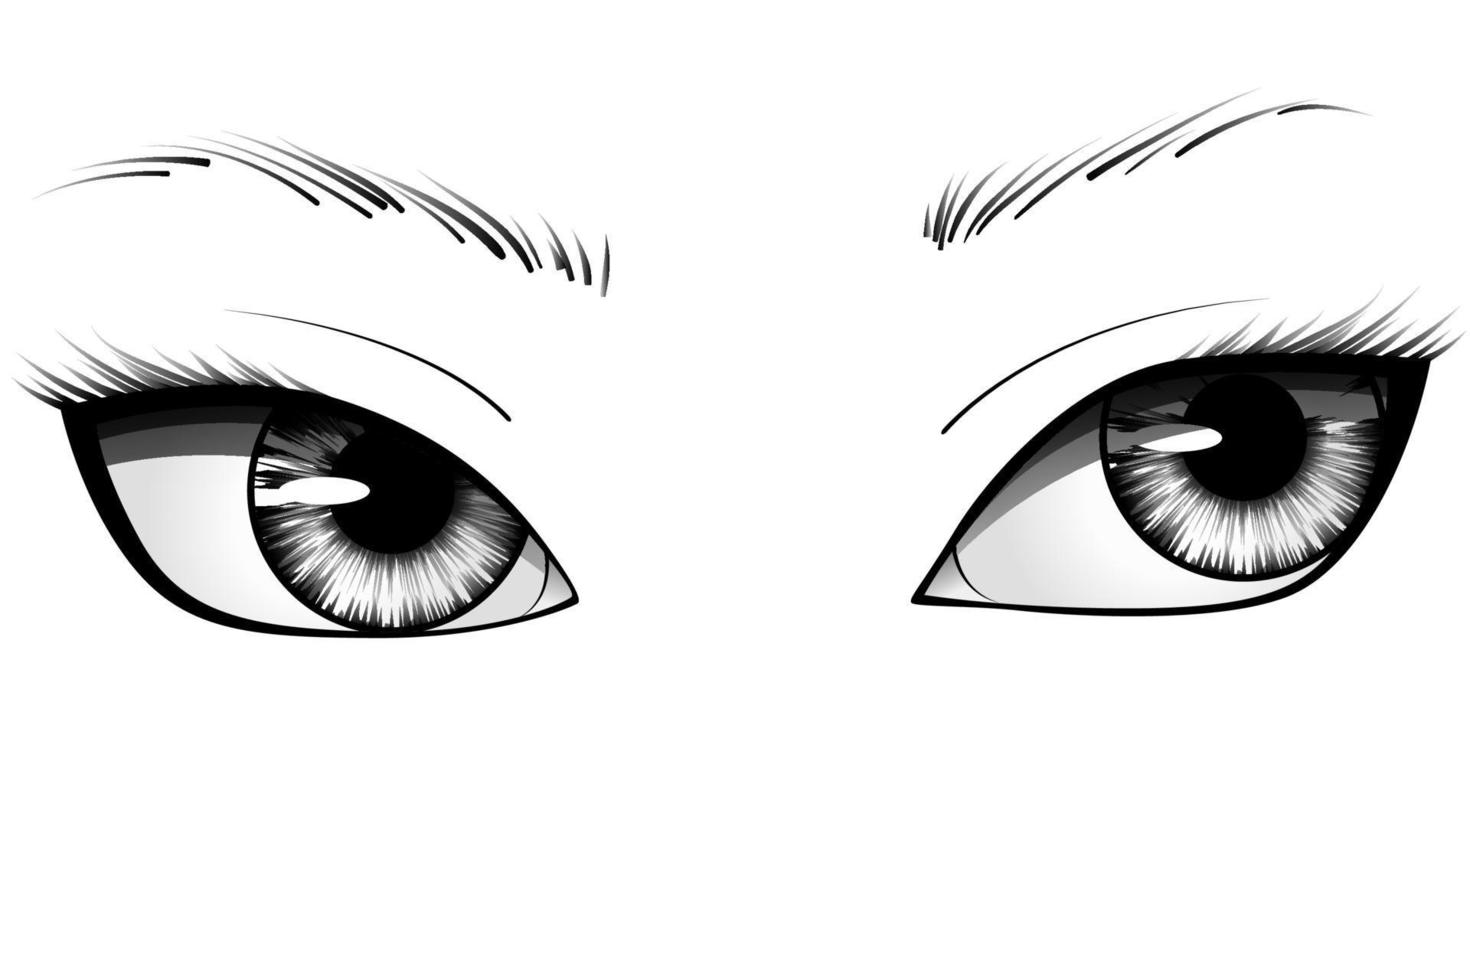 mão desenhada dos desenhos animados olhos de mulher com íris, sobrancelhas e cílios detalhados. ilustração vetorial de tipografia vetor